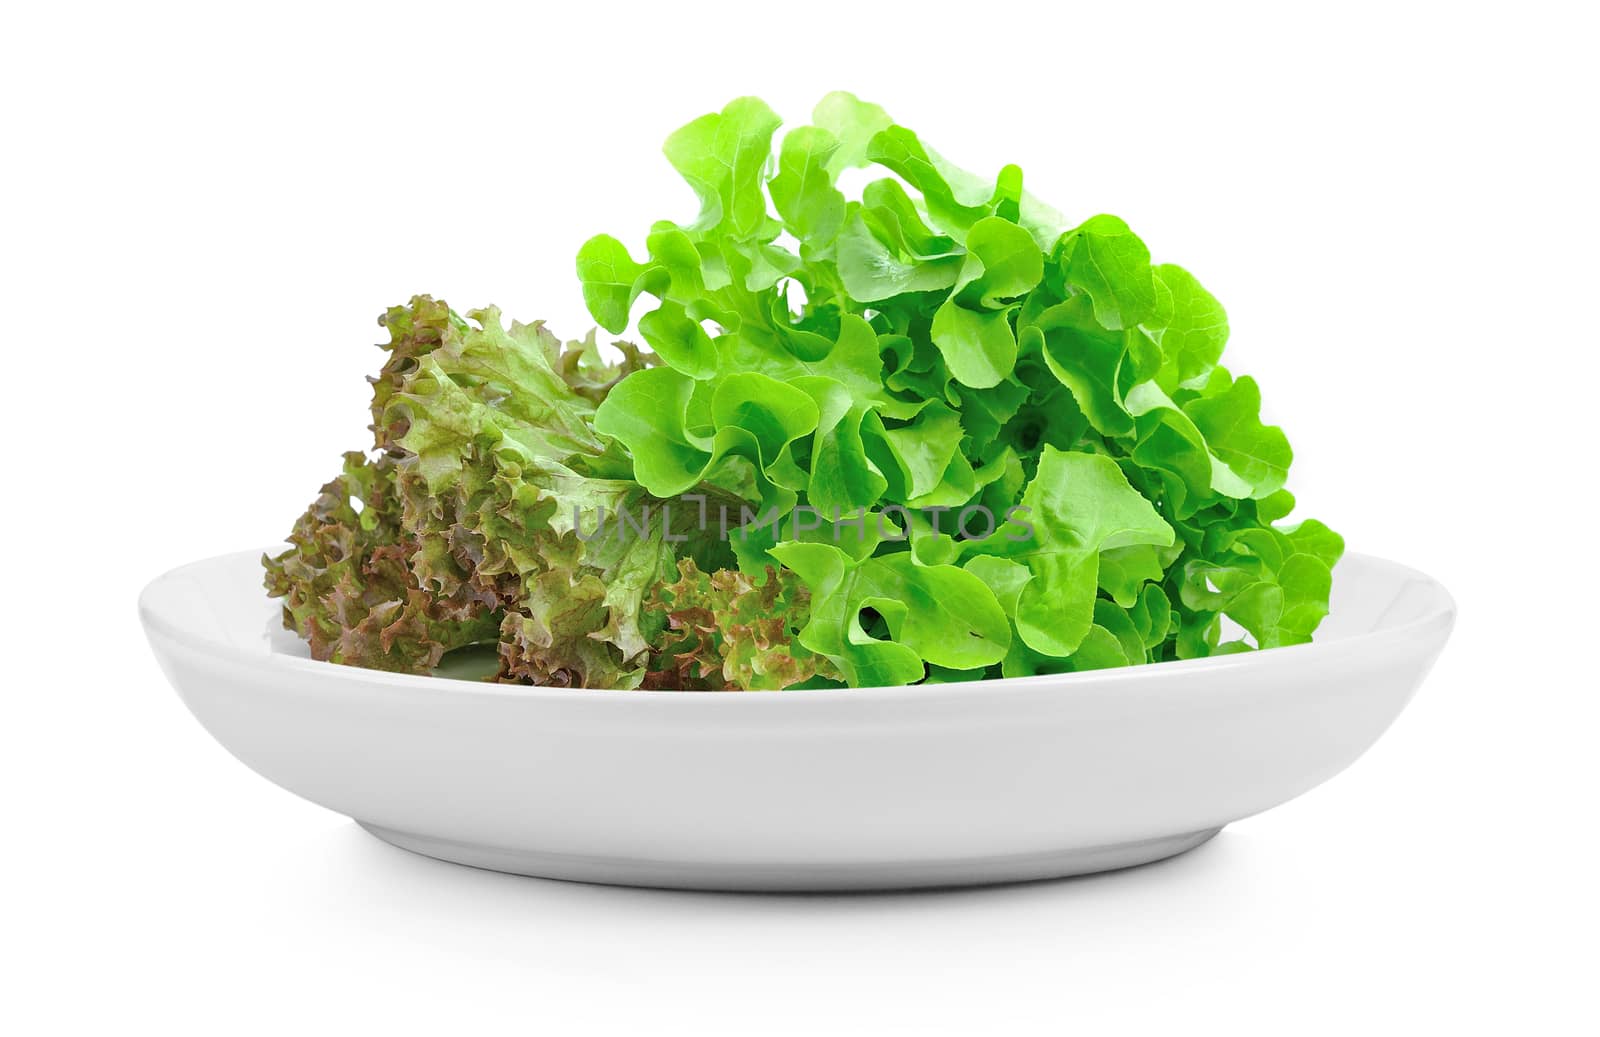 fresh green lettuce leaves in plate on white background